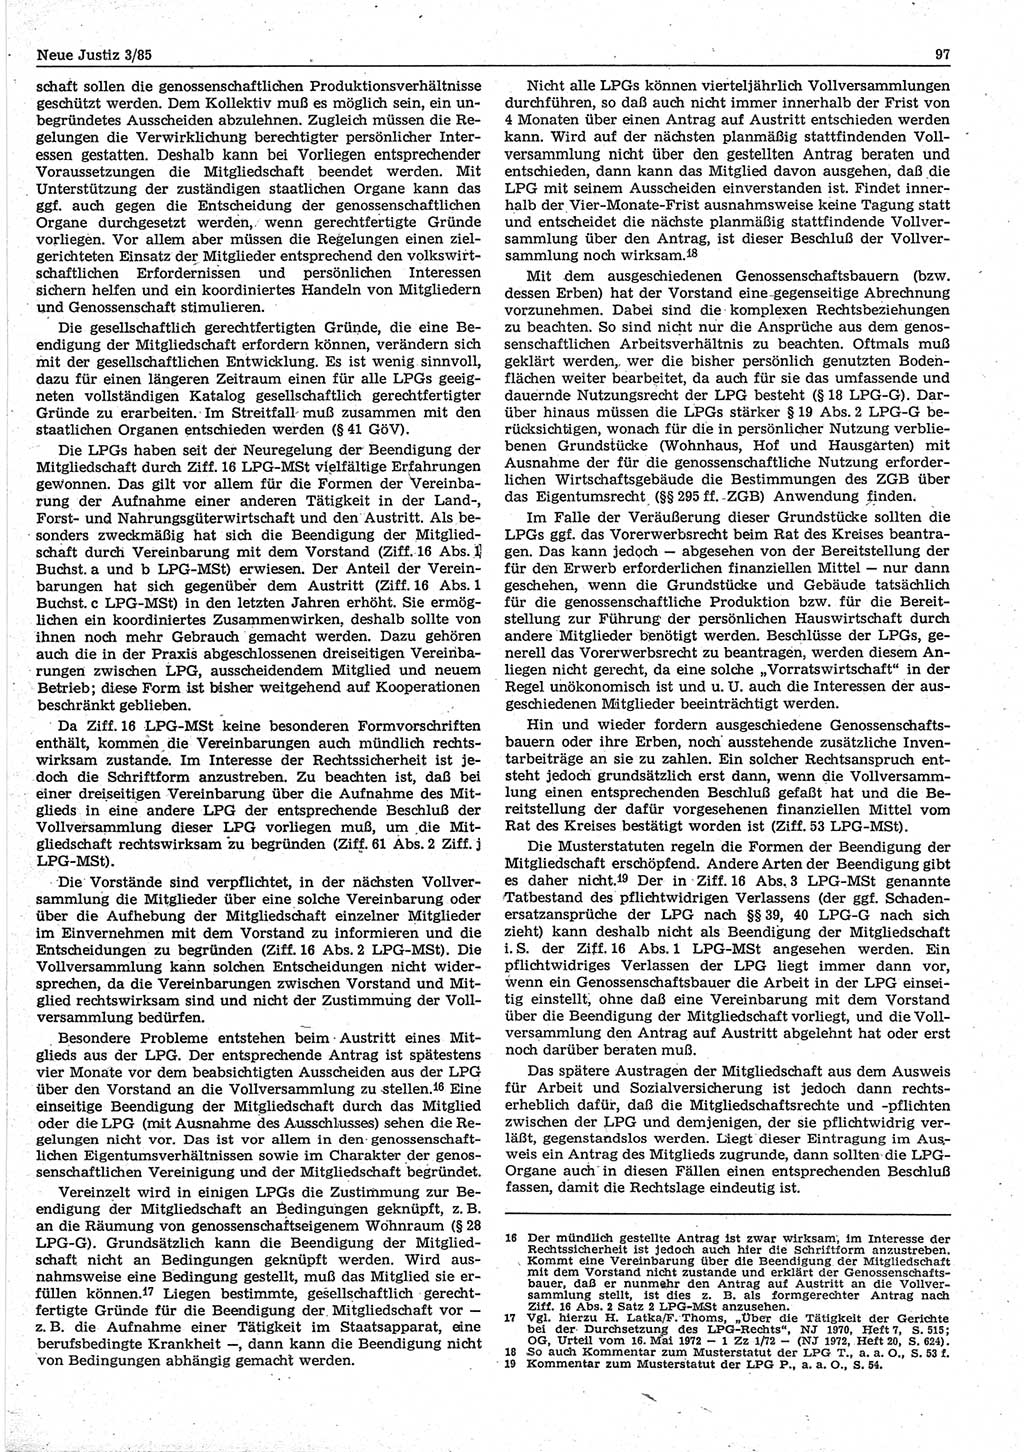 Neue Justiz (NJ), Zeitschrift für sozialistisches Recht und Gesetzlichkeit [Deutsche Demokratische Republik (DDR)], 39. Jahrgang 1985, Seite 97 (NJ DDR 1985, S. 97)